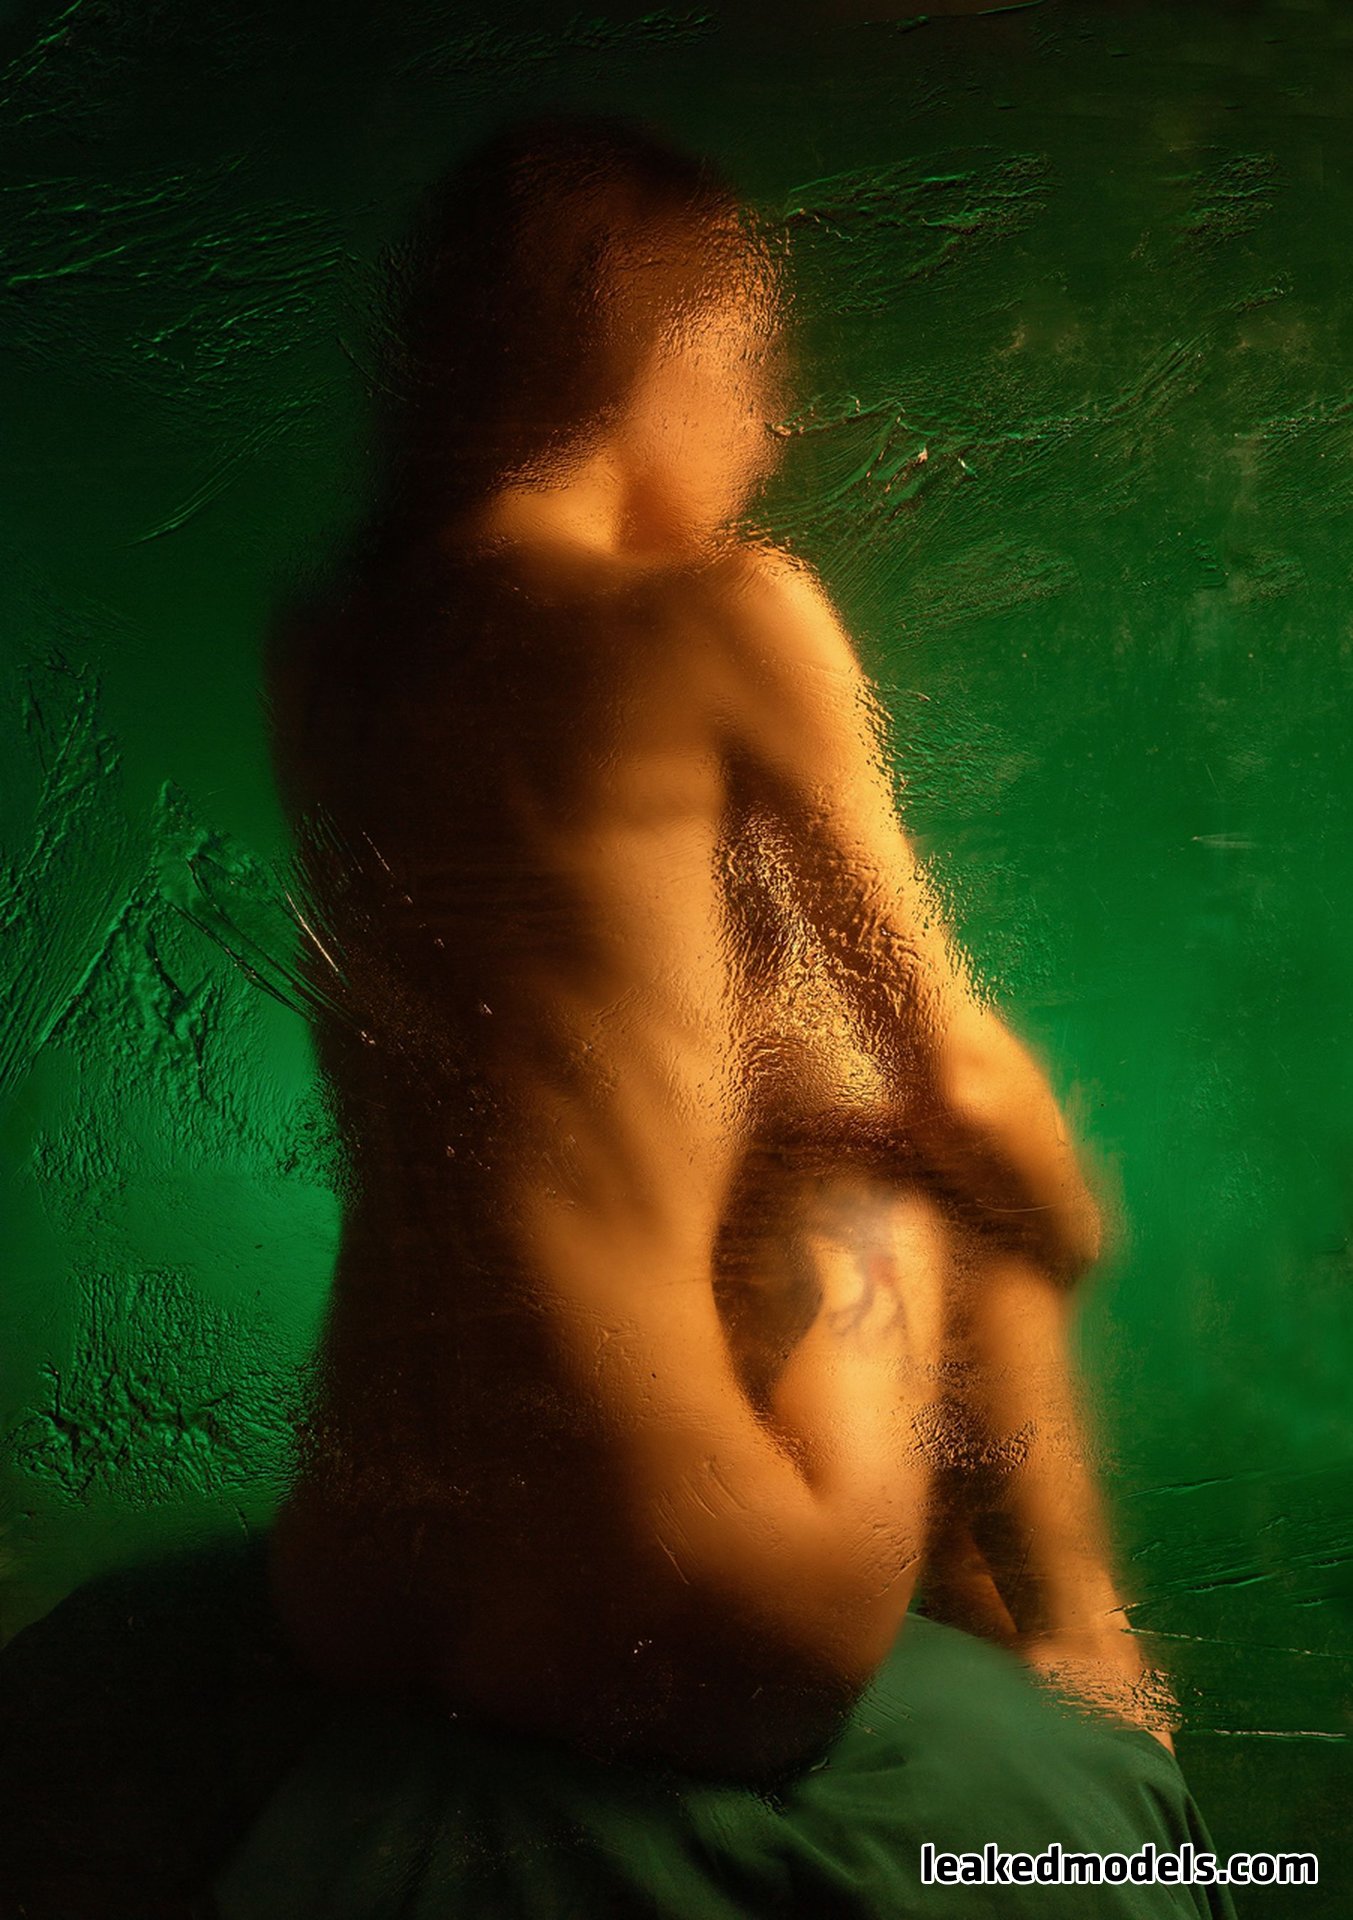 kamila salkova leaked nude leakedmodels.com 0004 - Kamila Salkova – kamila_salkova Instagram Nude Leaks (35 Photos)